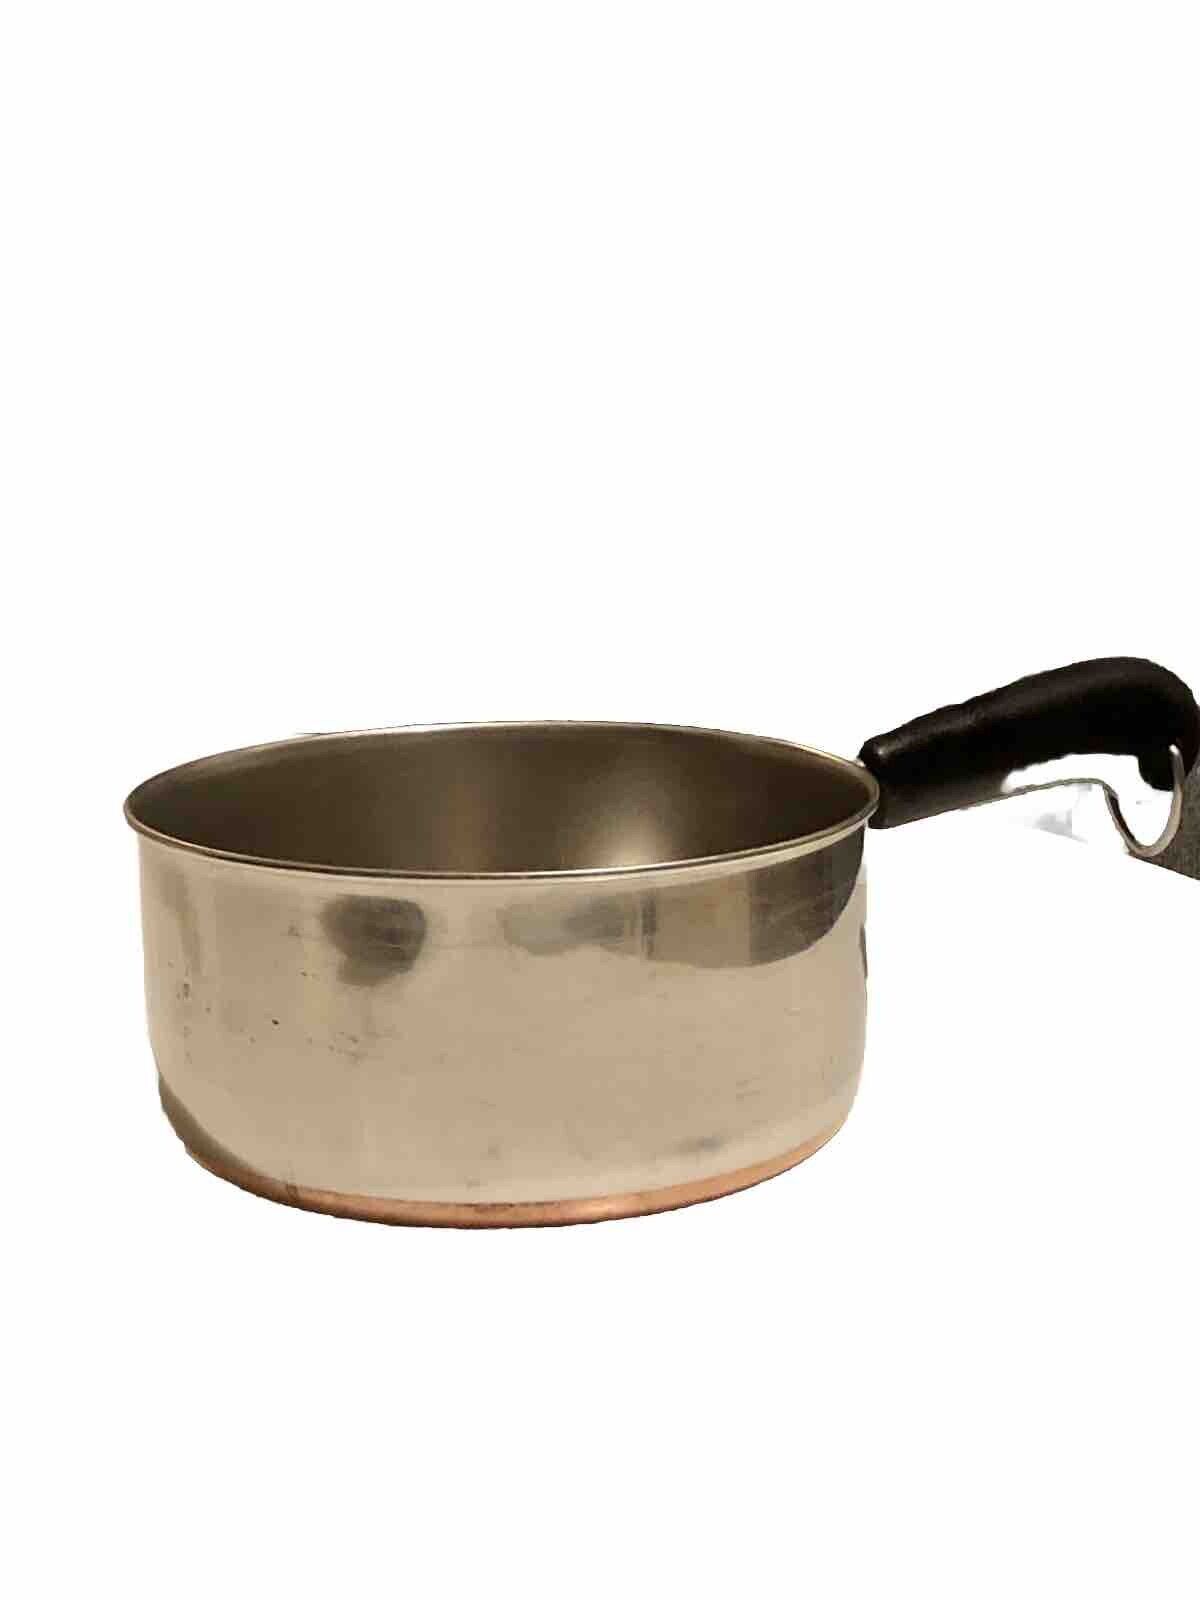 Vintage Revere Ware 2qt Copper Bottom Sauce Pan Stock Pot Pre-1968